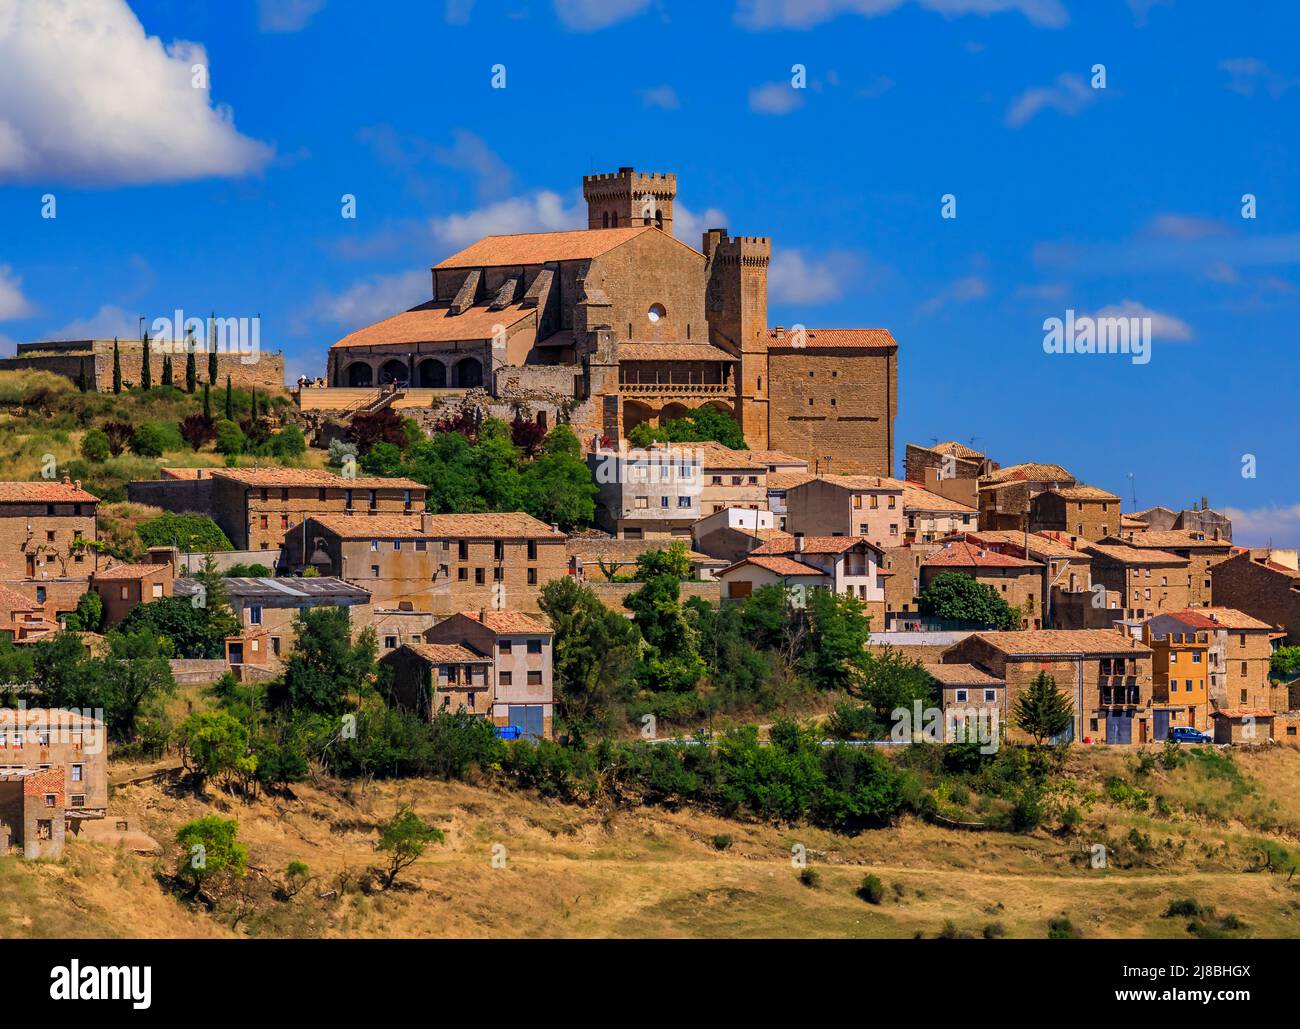 Vue pittoresque du village médiéval d'Ujue, au sommet d'une colline, à Navarre, dans le nord de l'Espagne, sur l'ancienne route de pèlerinage Camino de Santiago ou chemin de St James Banque D'Images